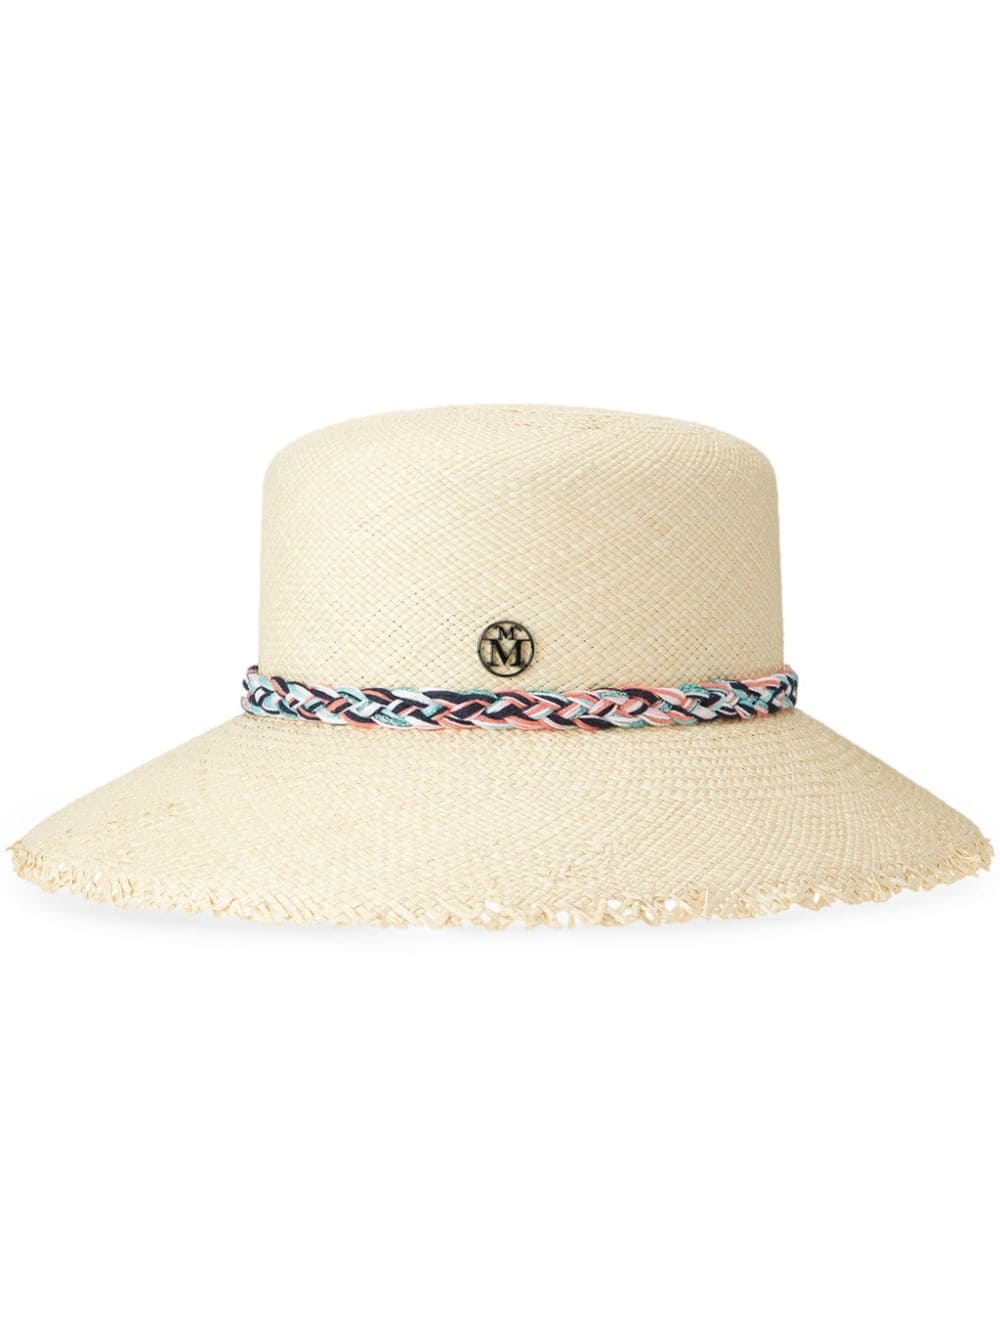 Maison Michel New Kendall braided-strap hat - Neutrals